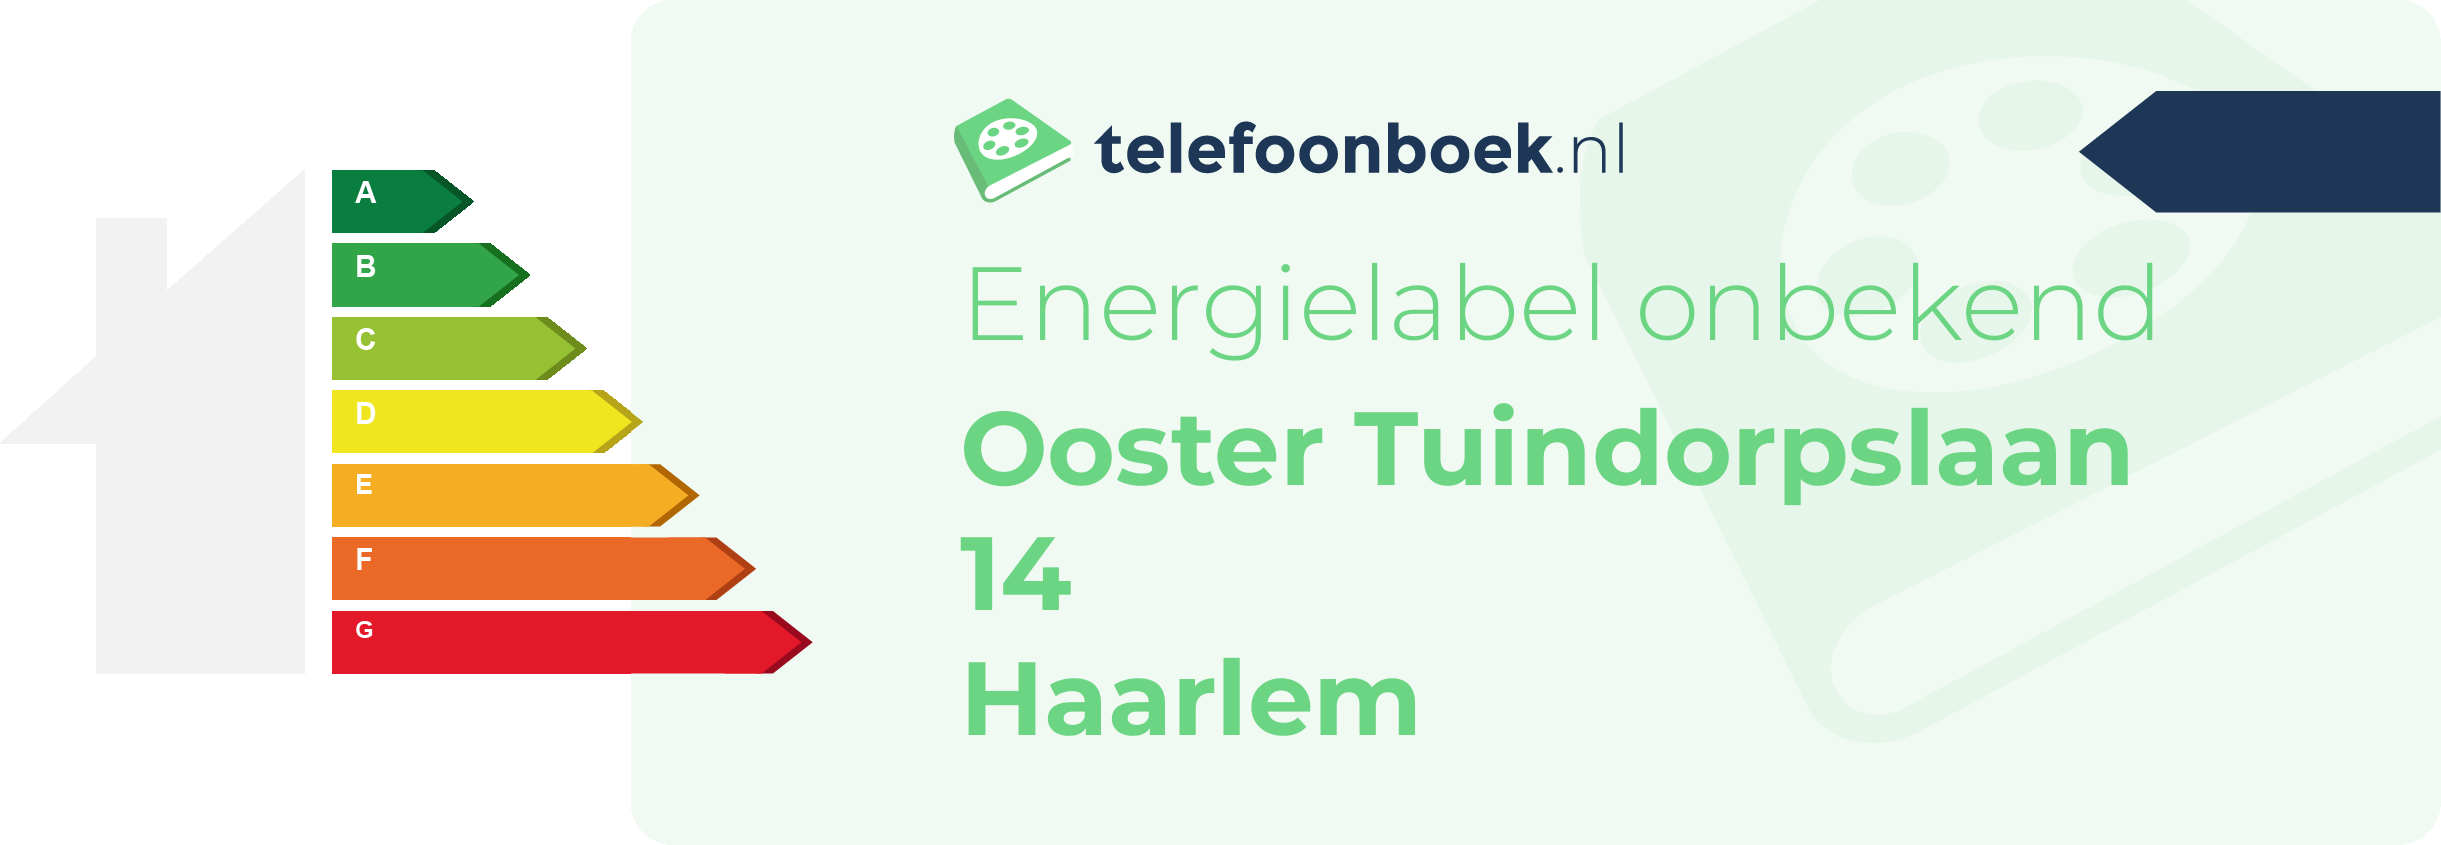 Energielabel Ooster Tuindorpslaan 14 Haarlem